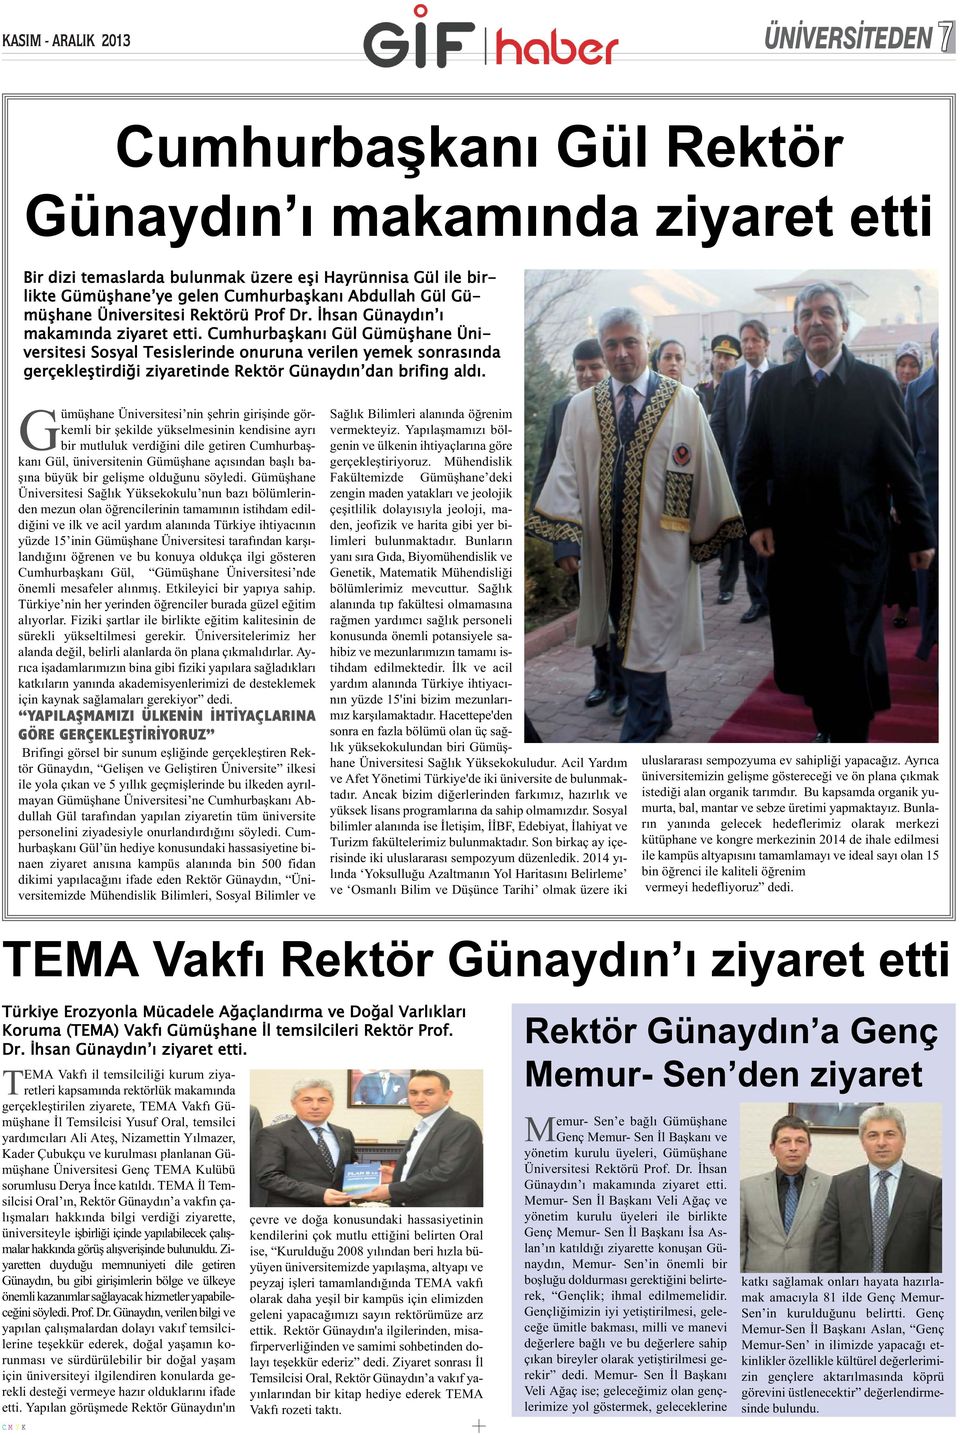 Cumhurbaşkanı Gül Gümüşhane Üniversitesi Sosyal Tesislerinde onuruna verilen yemek sonrasında gerçekleştirdiği ziyaretinde Rektör Günaydın dan brifing aldı.